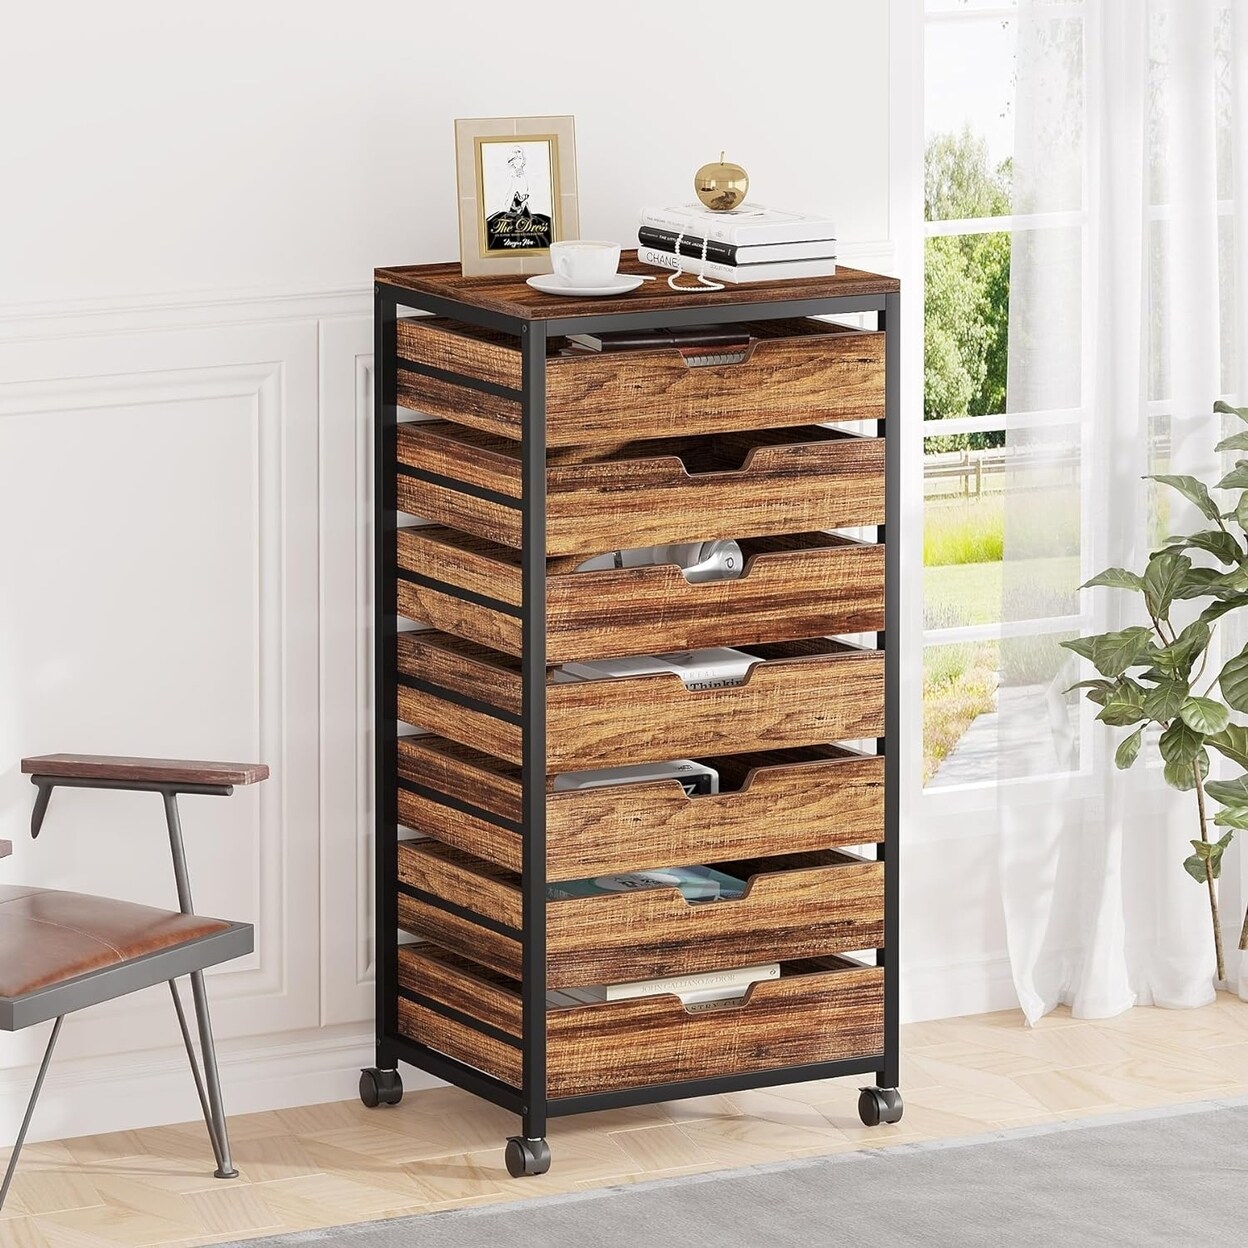 Tribesigns   7 Drawer Chest Wood Storage Dresser Cabinet with Wheels Industrial Storage Drawer Organizer Cart